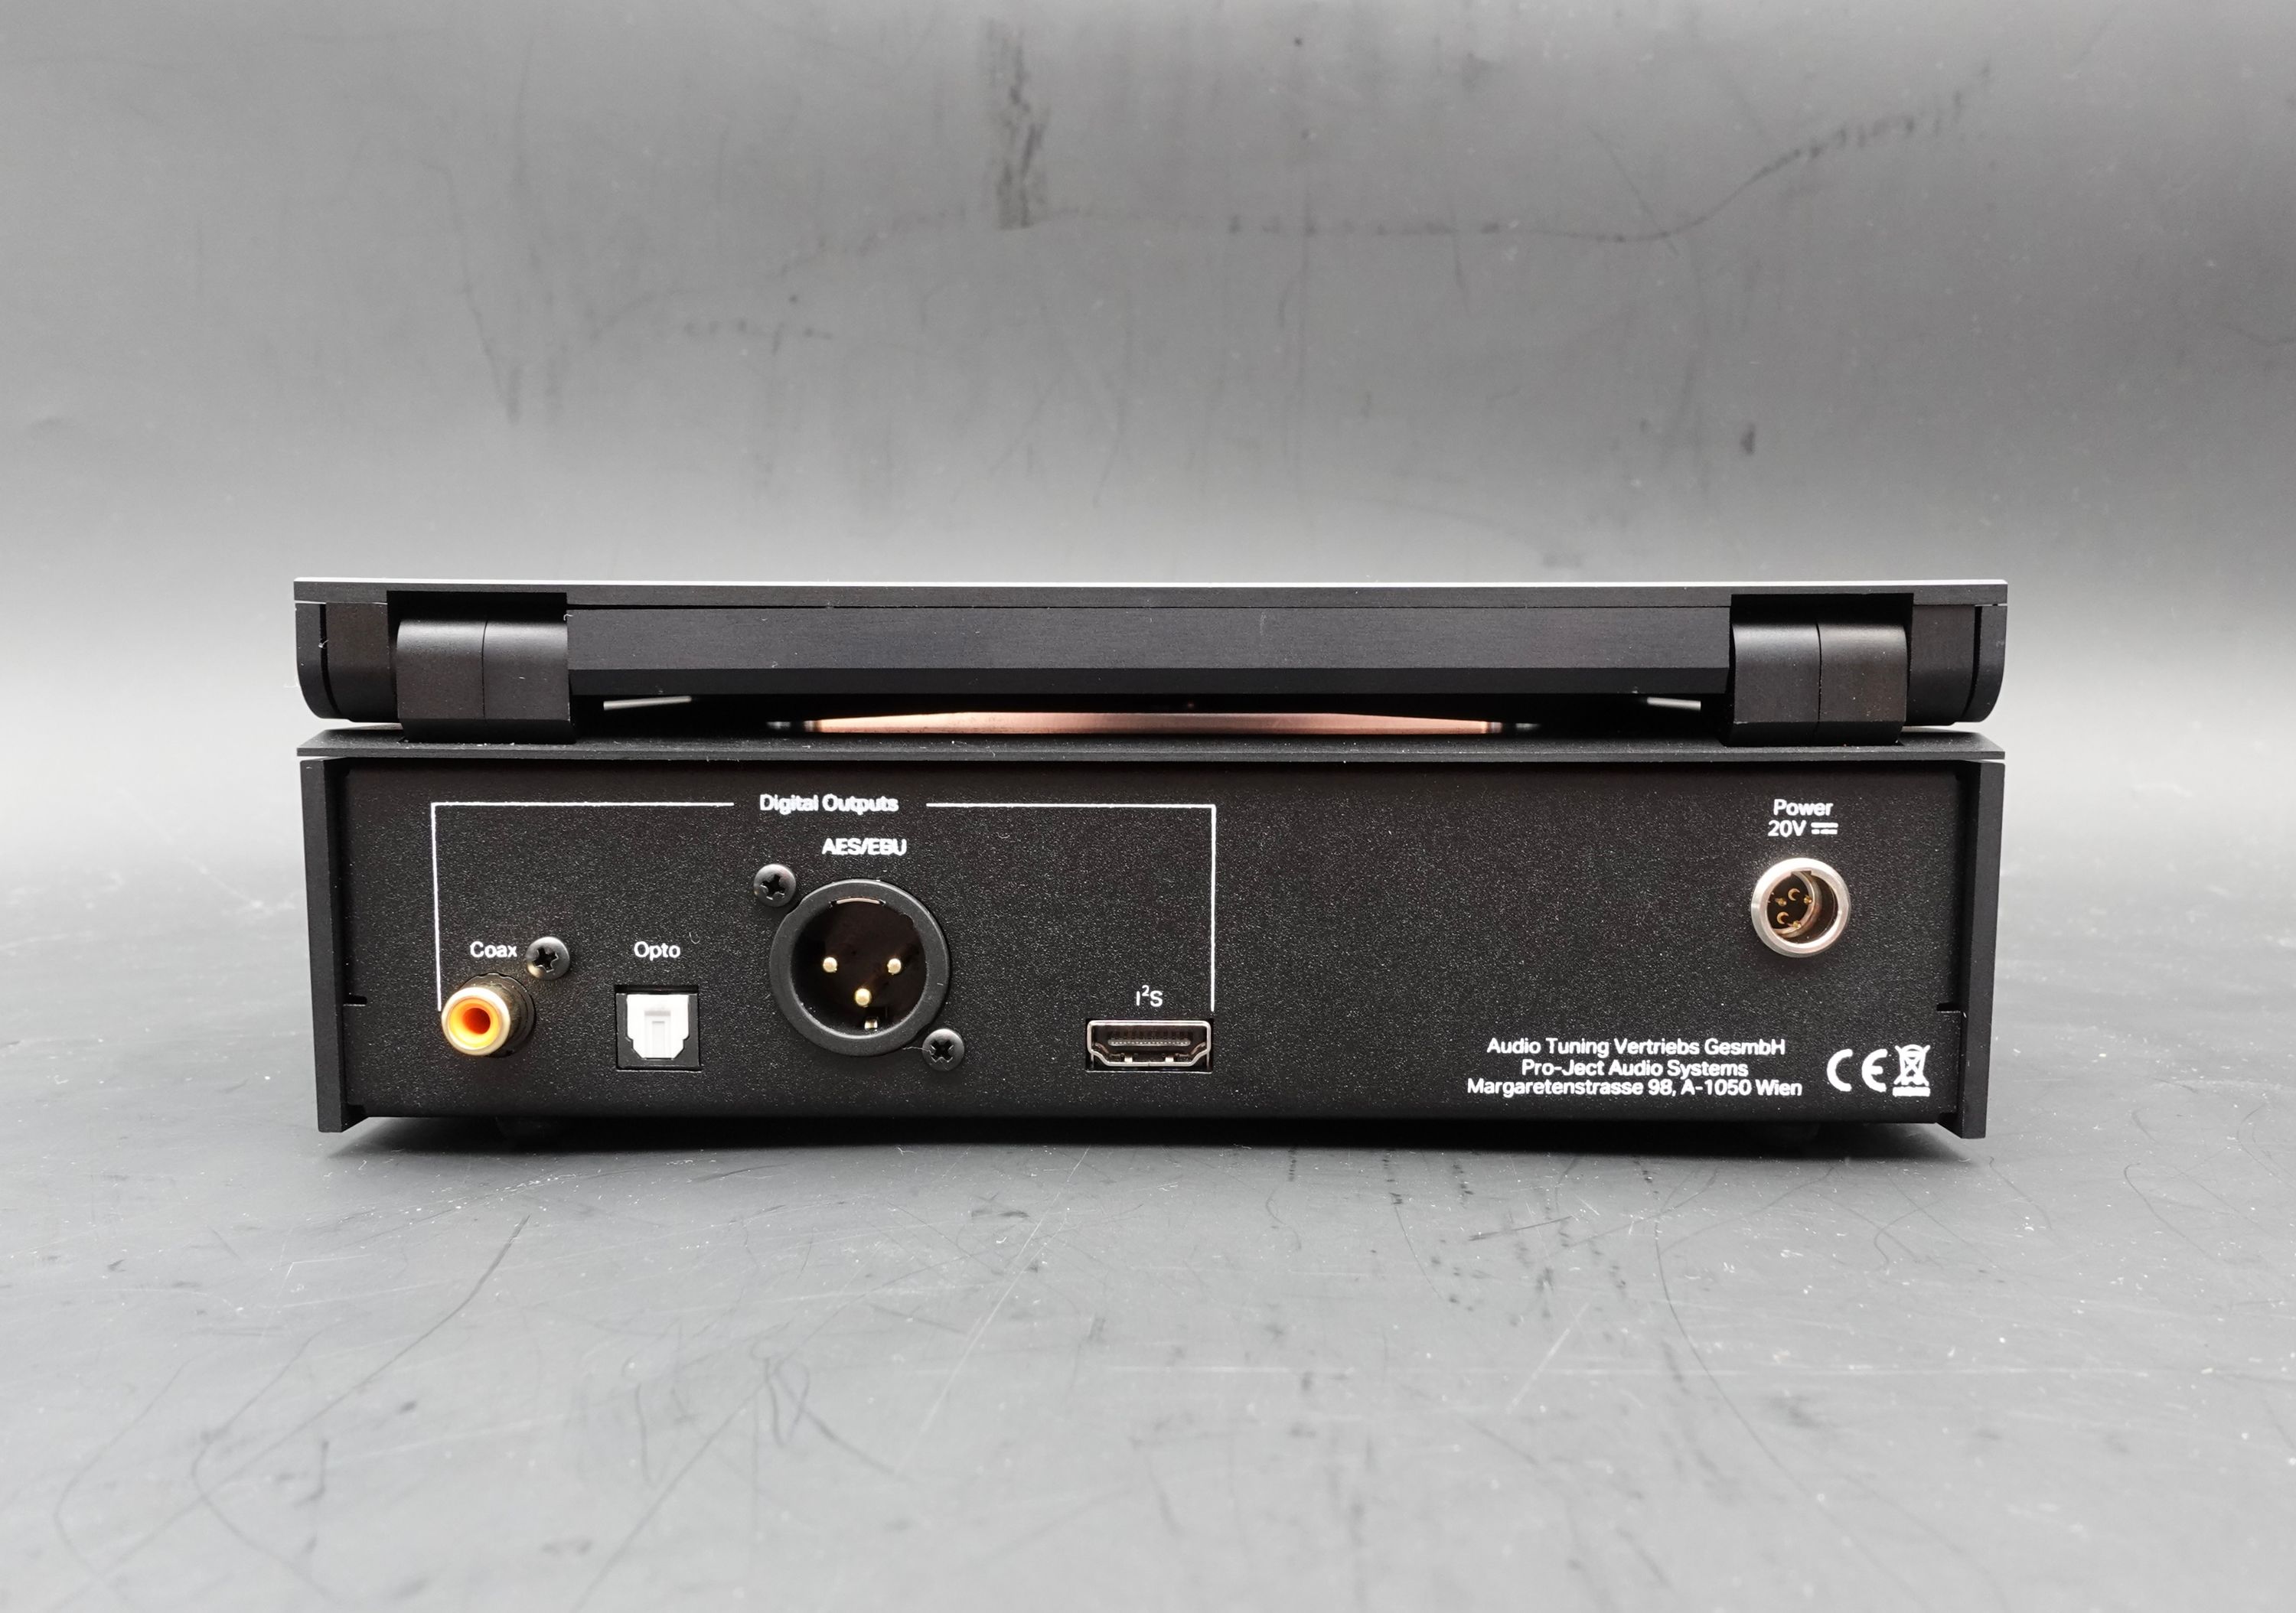 Pro-Ject CD Box RS2 T schwarz Kundenrückläufer